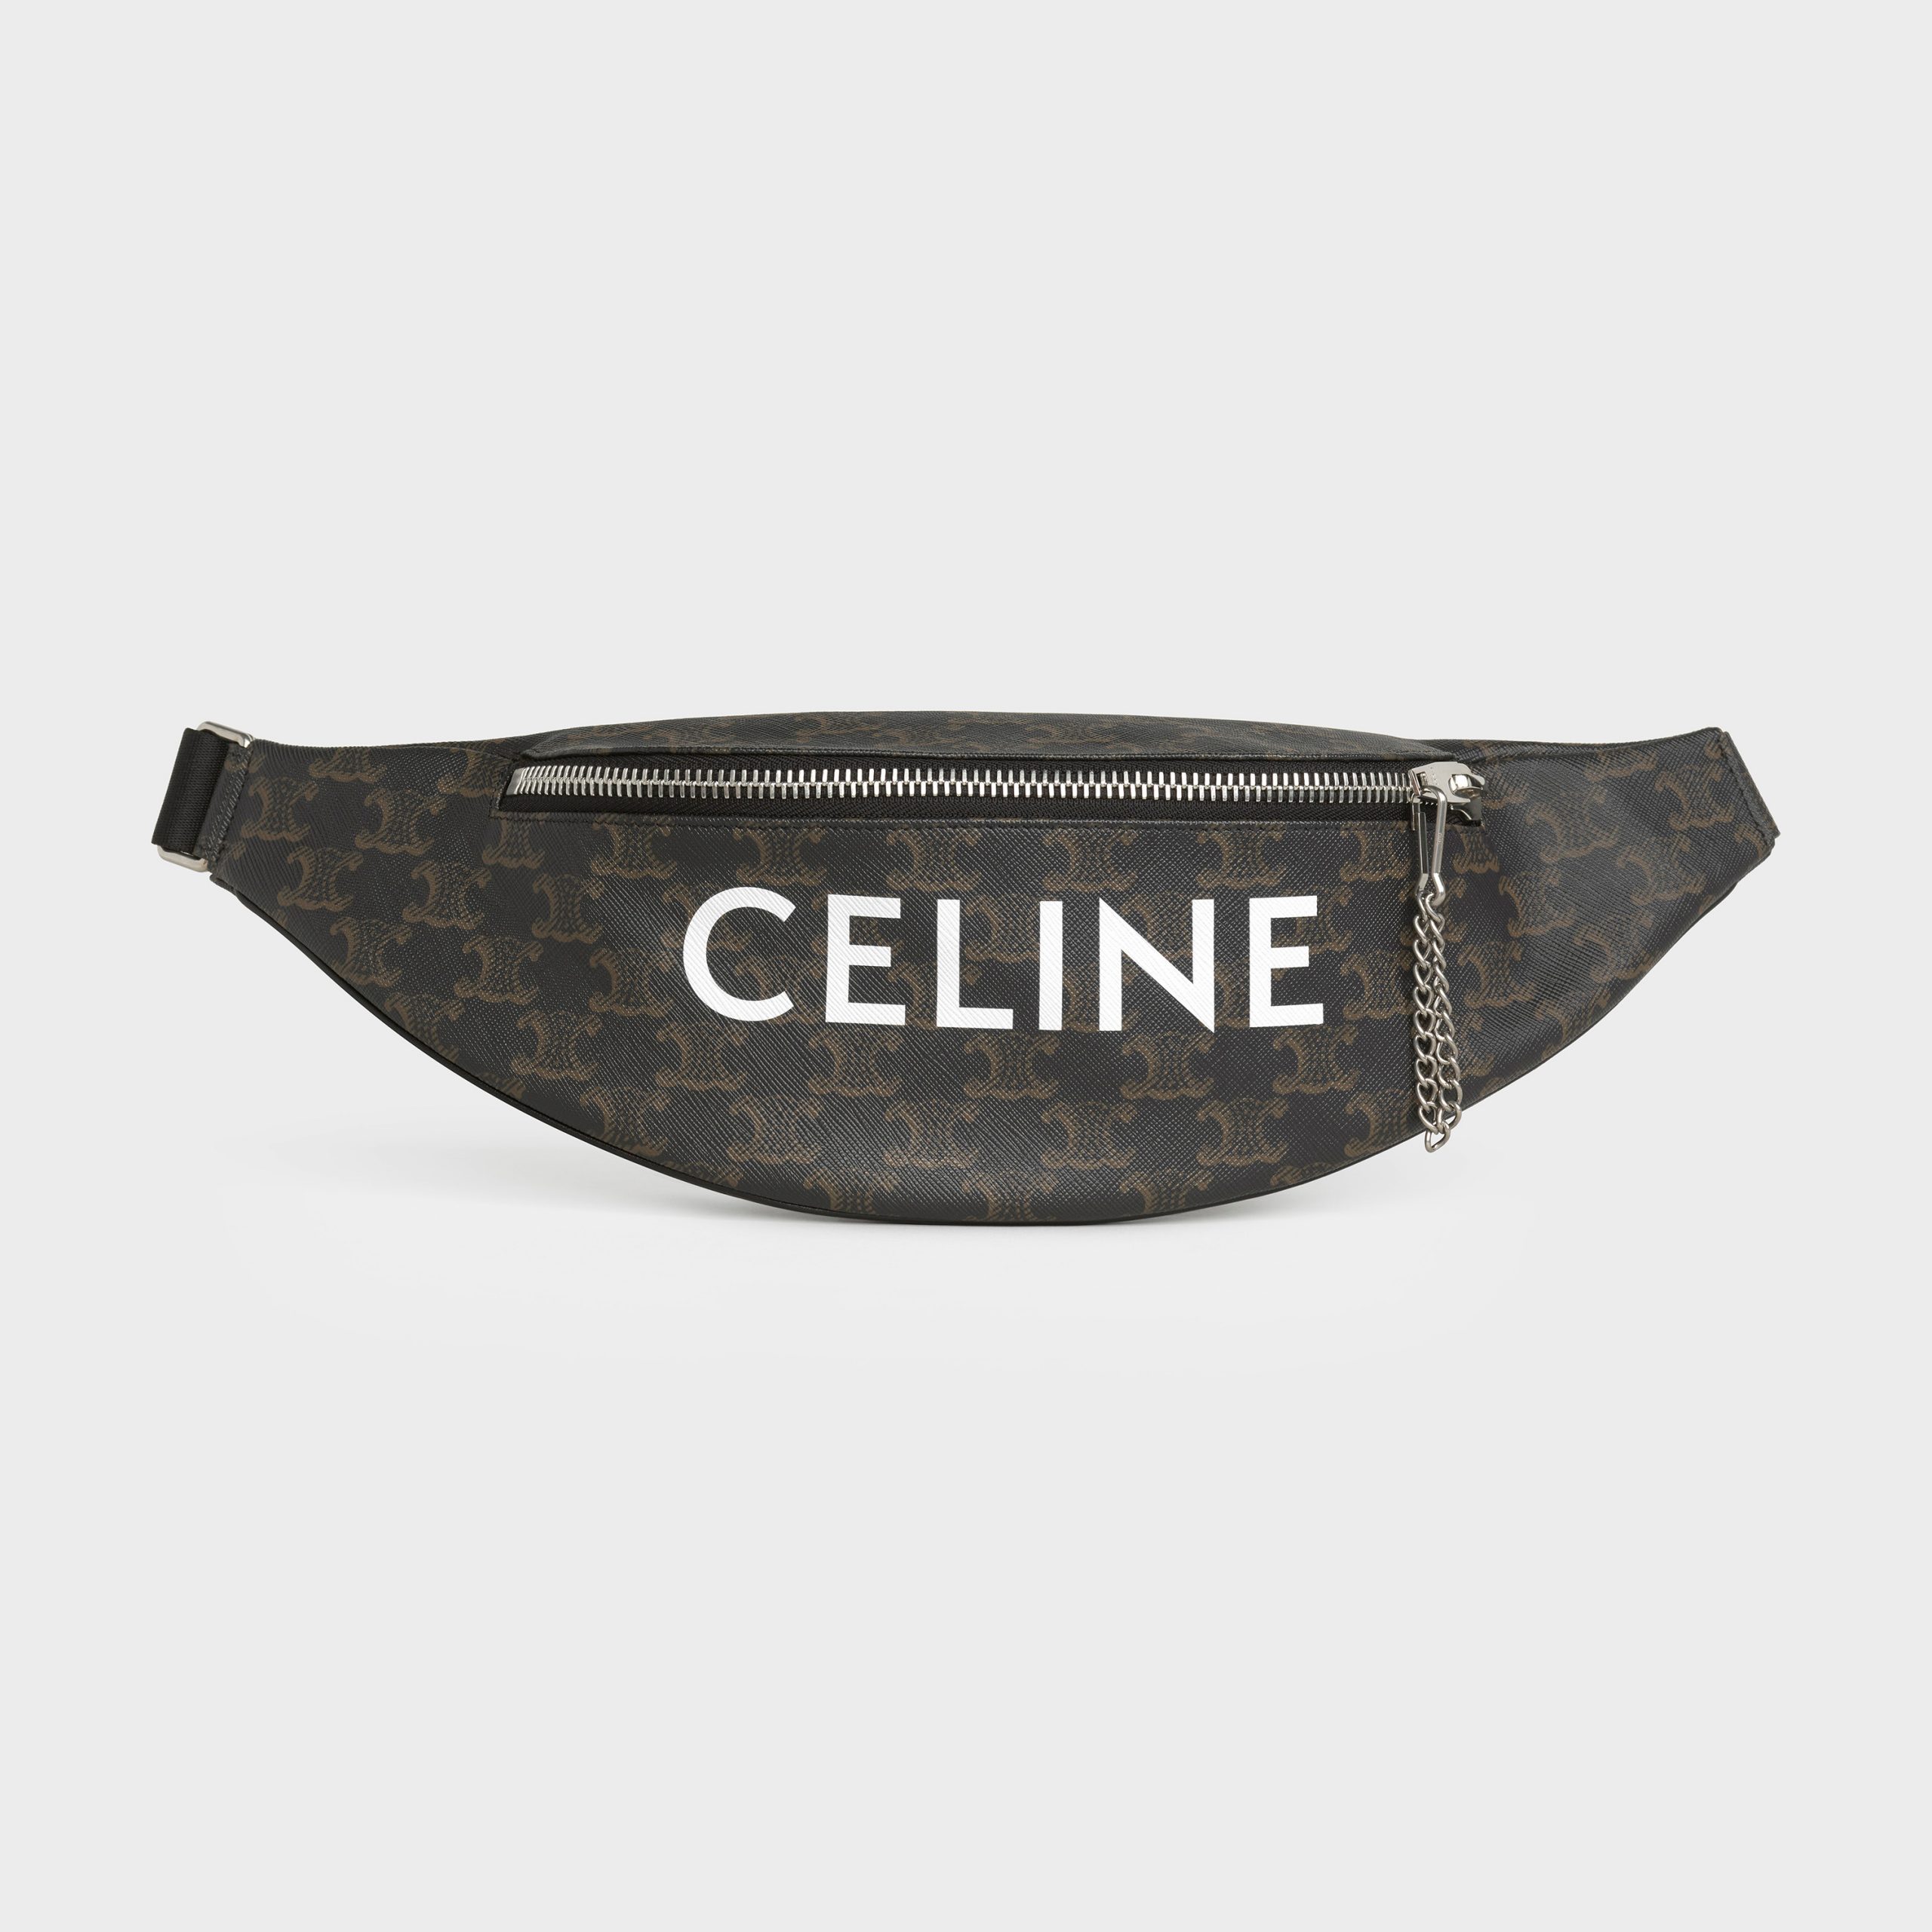 Celine Belt Bag In Triomphe Canvas With Celine Print – Black / Black – 195972DFV.38NN